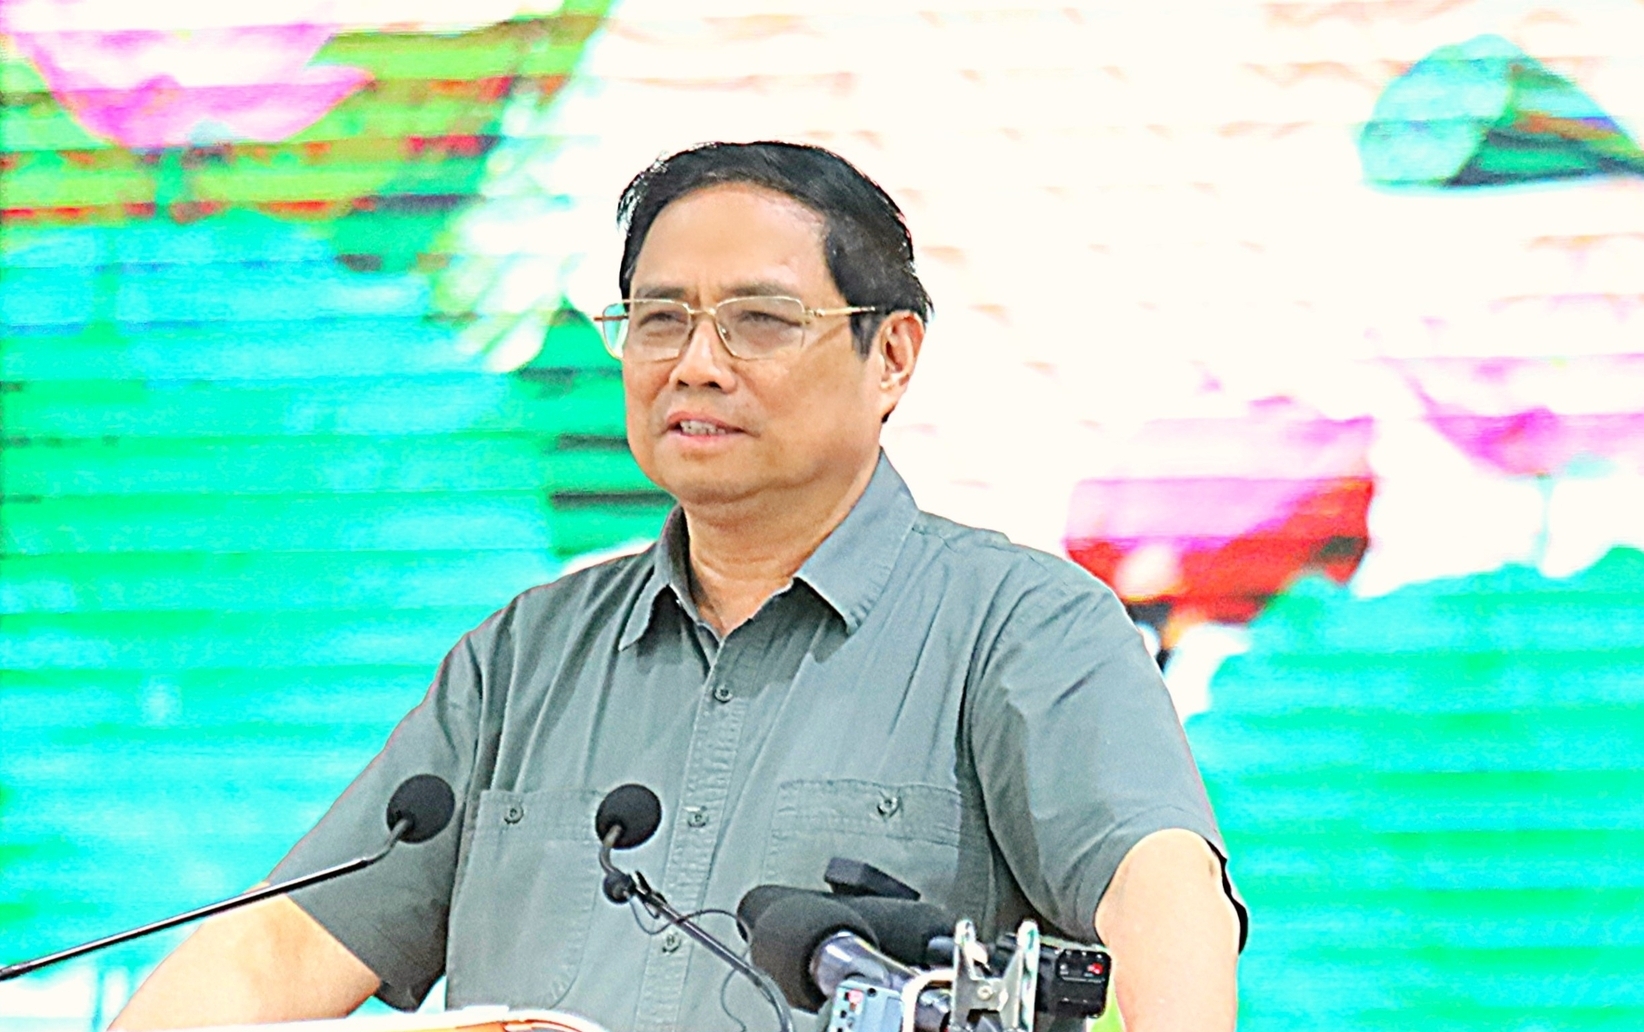 Thủ tướng Chính phủ Phạm Minh Chính yêu cầu các bộ, ngành và địa phương vùng ĐBSCL nâng cao nhận thức về sự nguy hại và hậu quả của sạt lở ở ĐBSCL. Ảnh: Kim Anh.